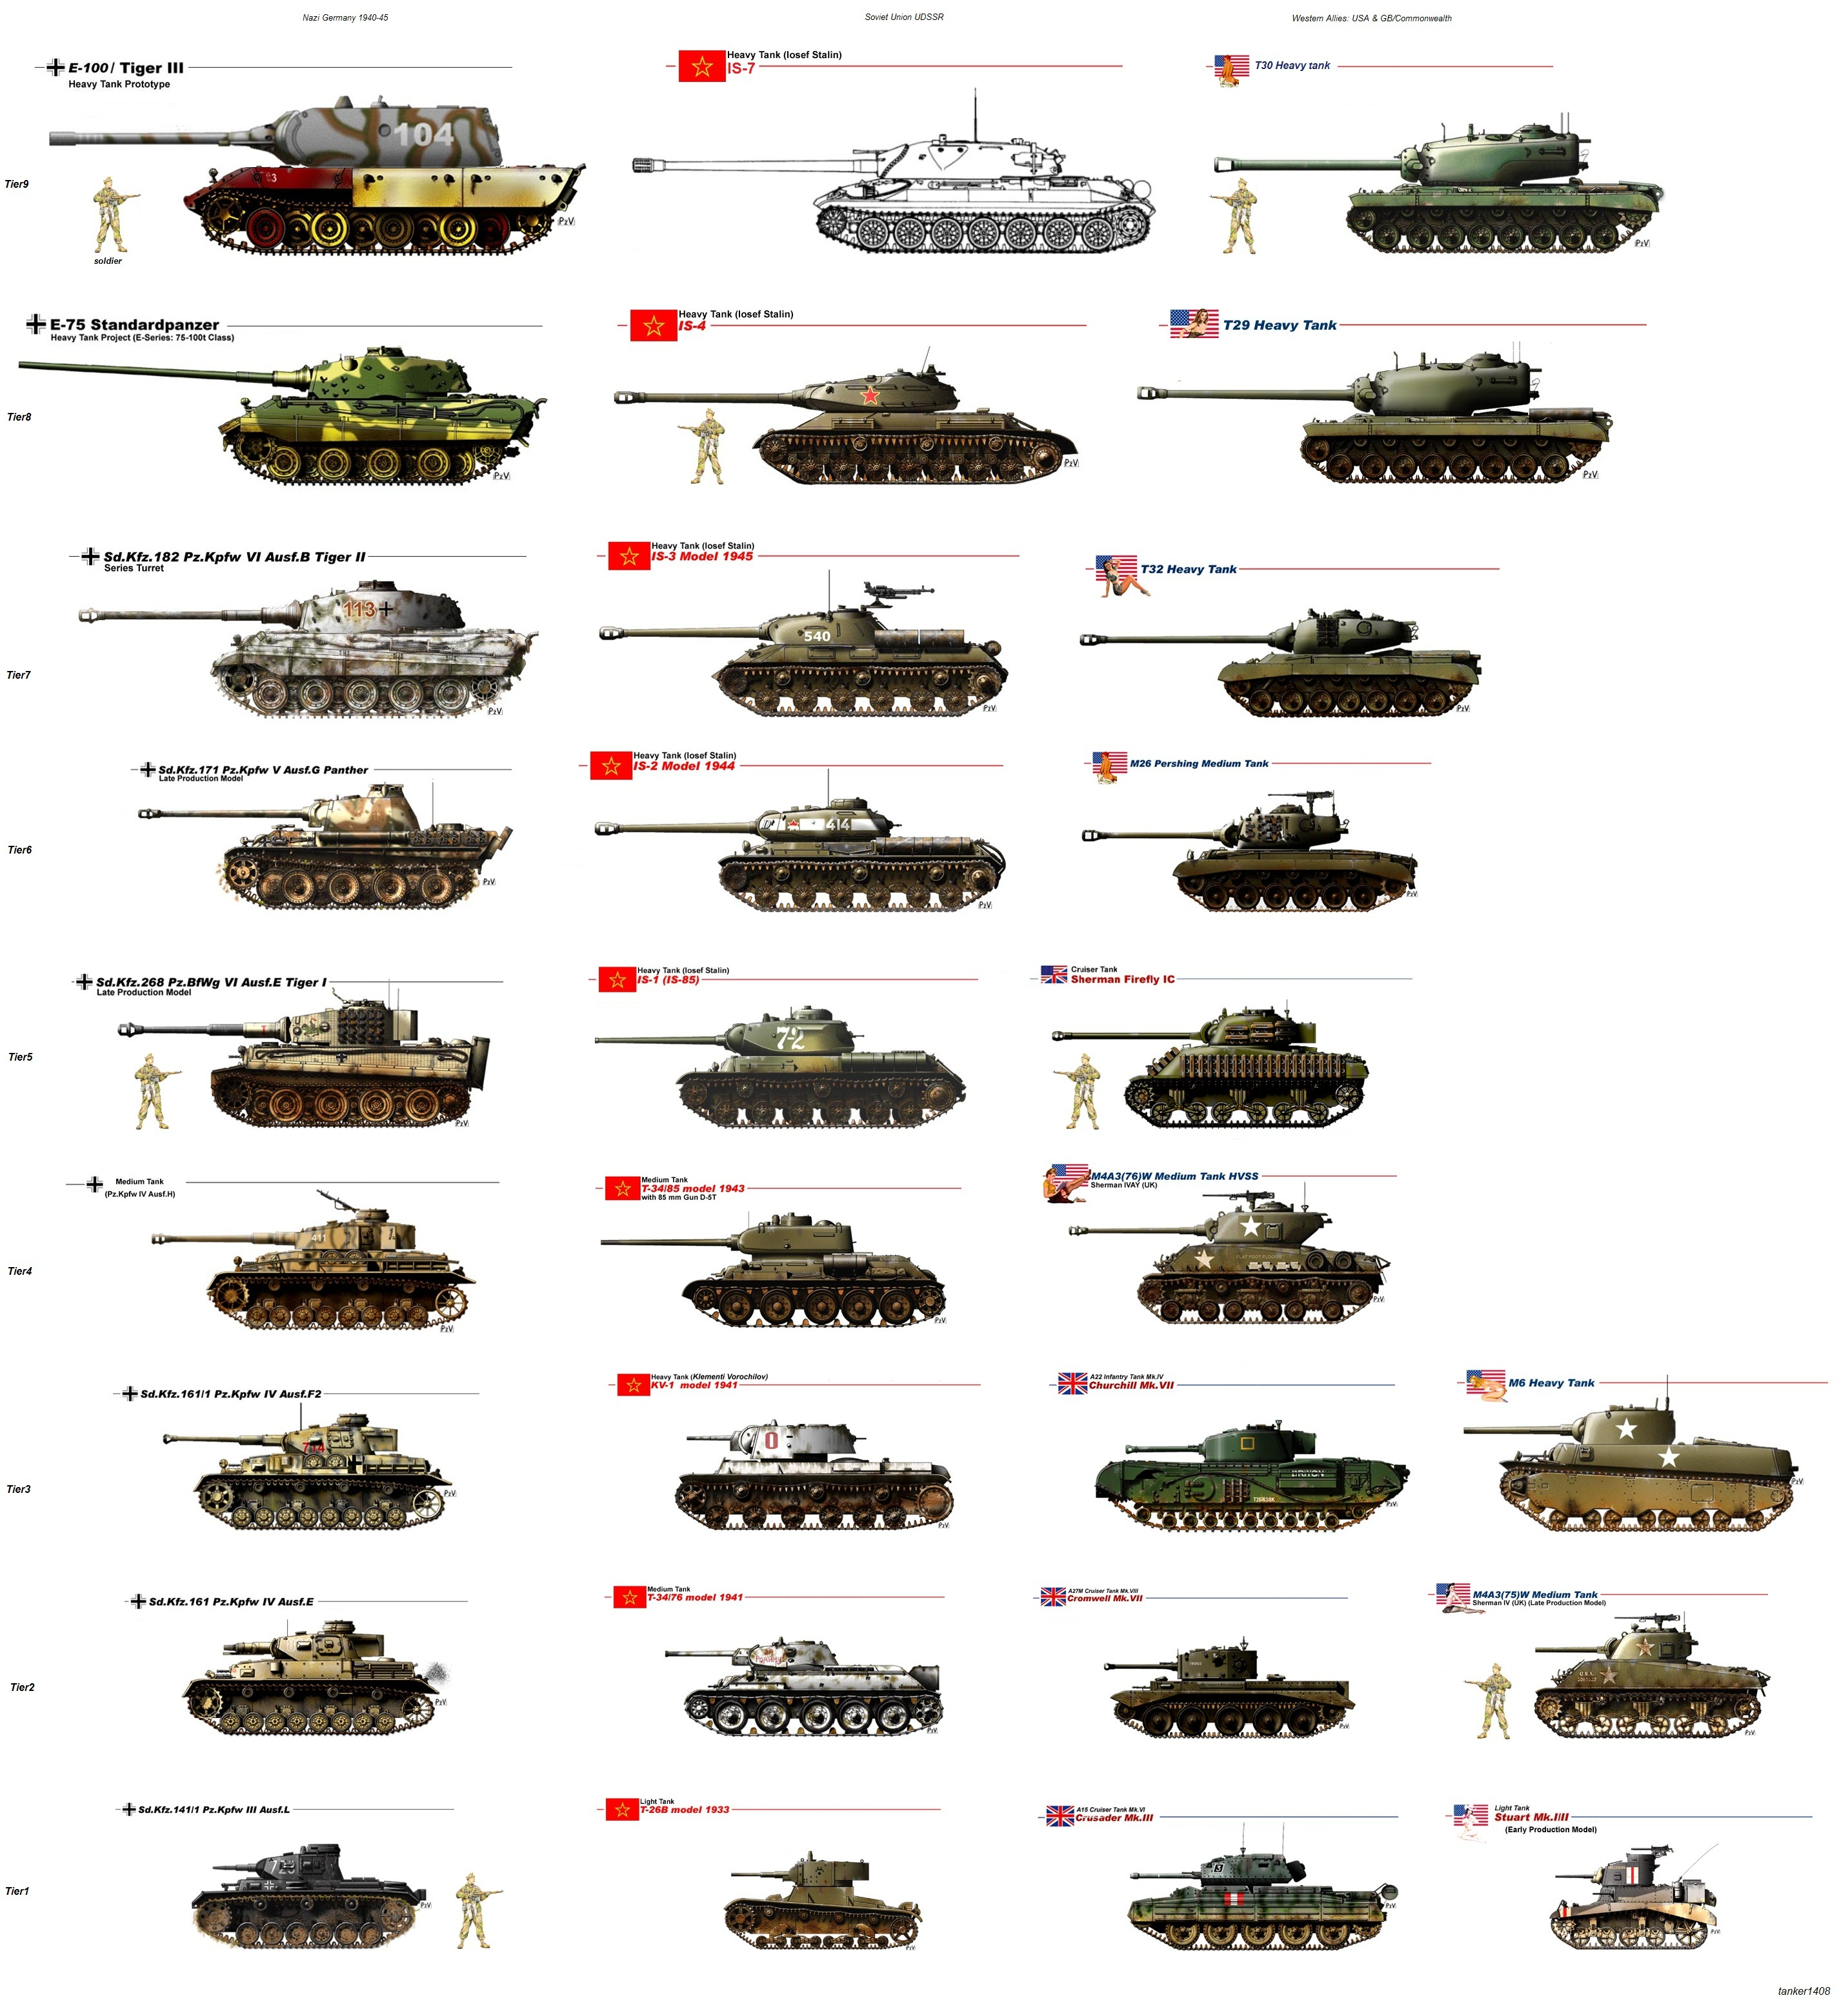 Название танков в годы войны. Танки вид сбоку и название. Таблица танков ВМВ сбоку. Эволюция бронетехники Германии второй мировой войны. Танки второй мировой войны вид сбоку.